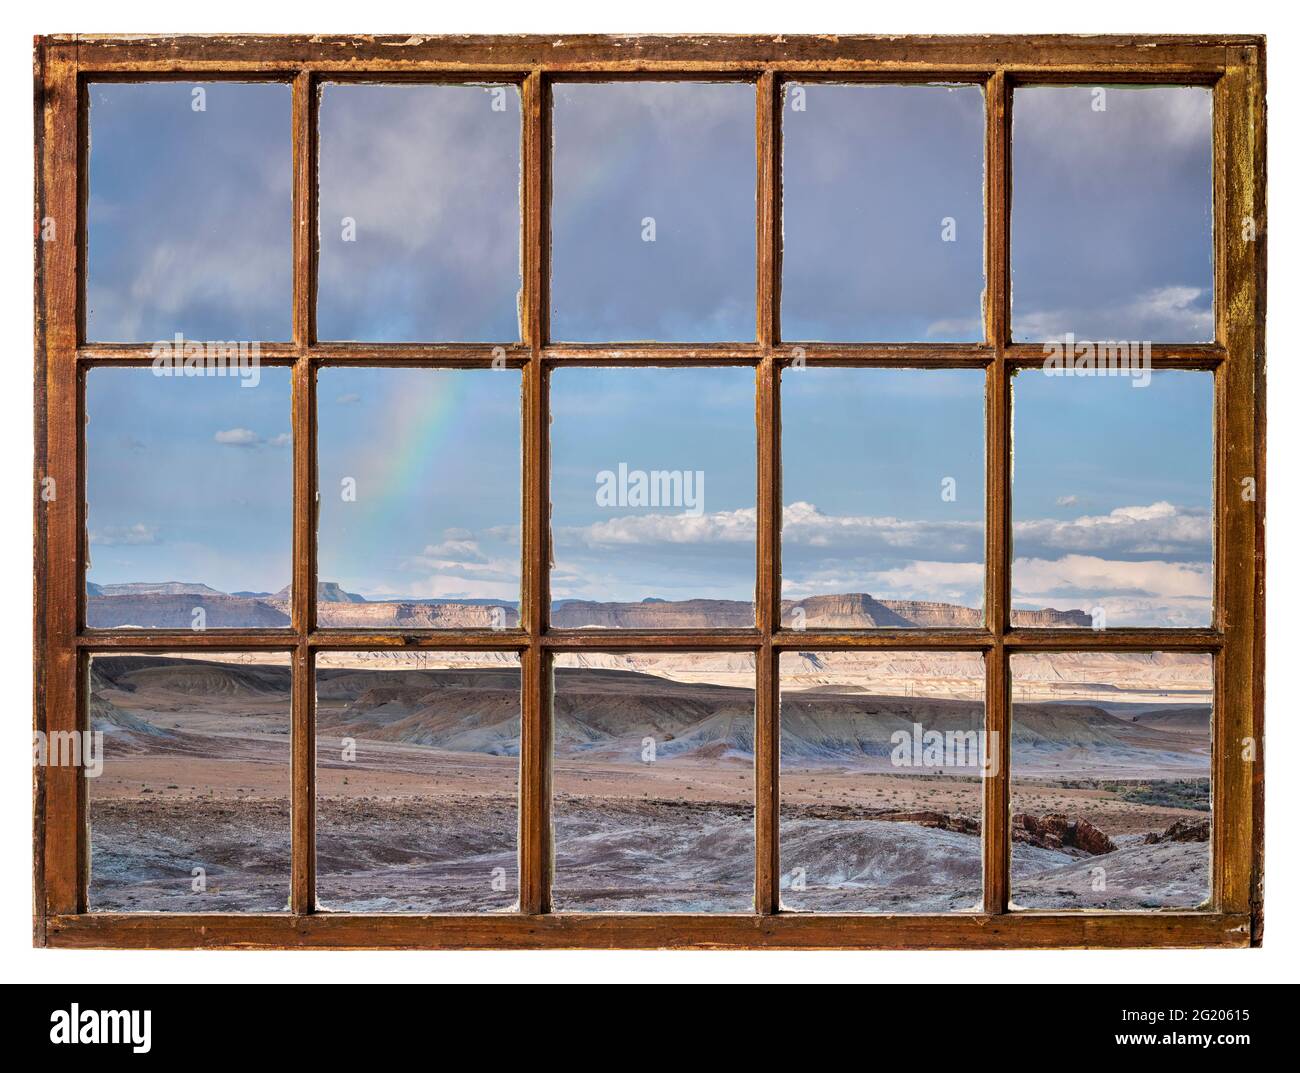 paesaggio desertico roccioso con un arcobaleno visto da una cabina d'epoca Foto Stock